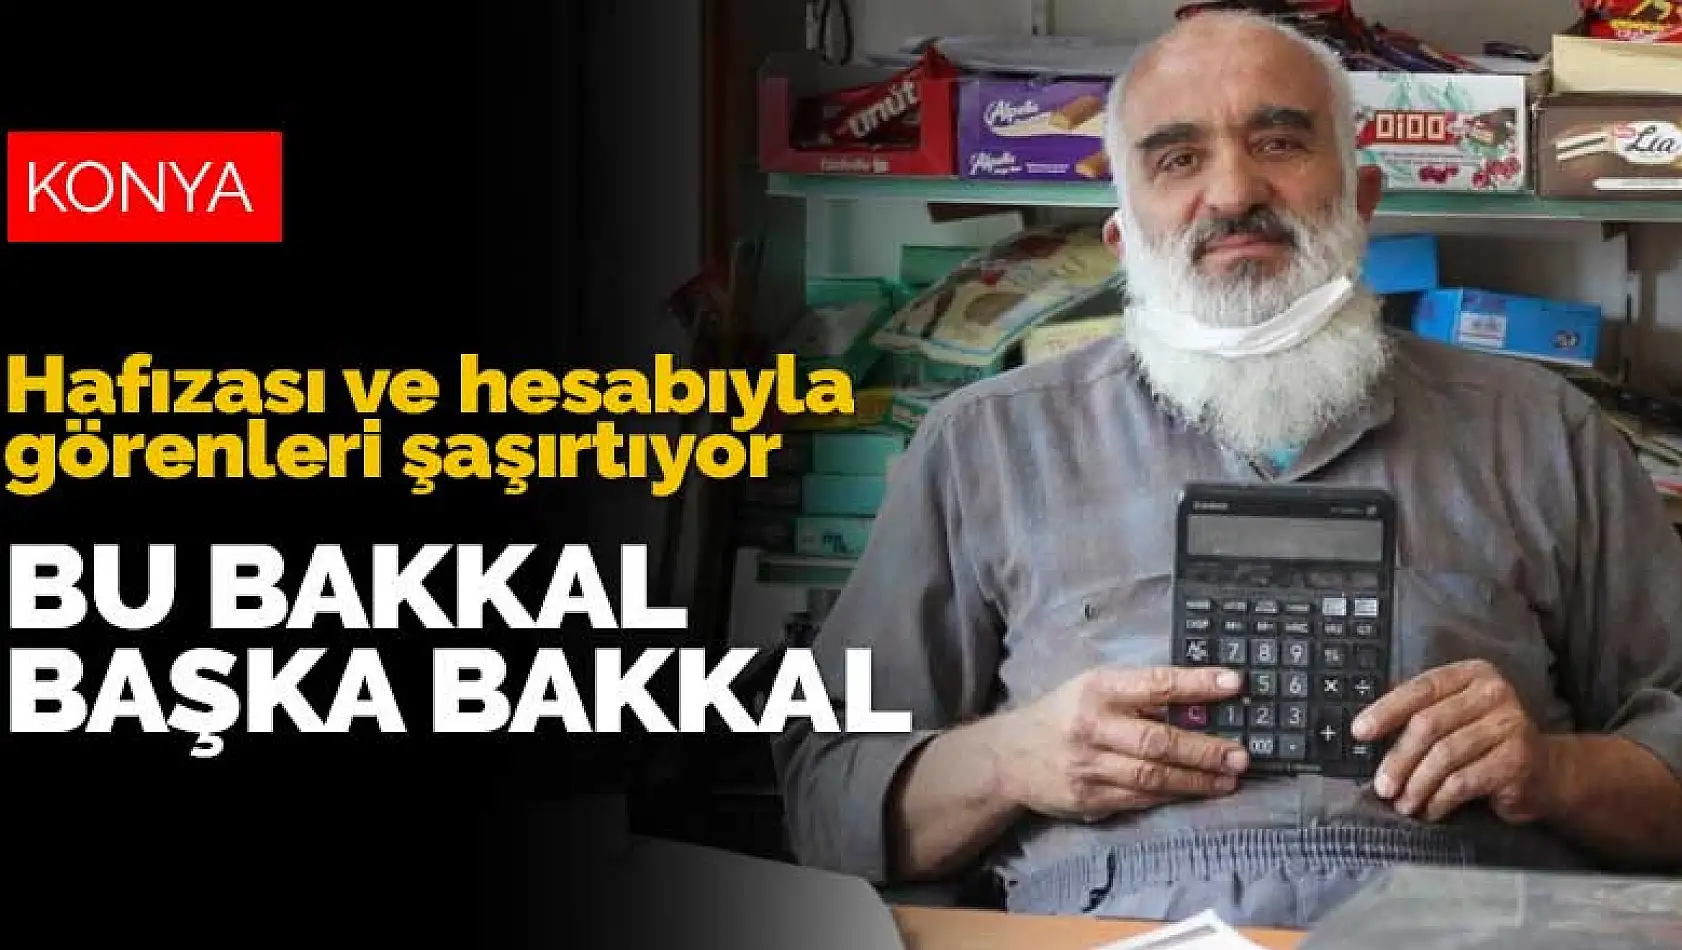 Konya'da 47 yıldır mahalle bakkallığı yapan 'Dakka Bakkal' hafızası ve hesabıyla görenleri şaşırtıyor